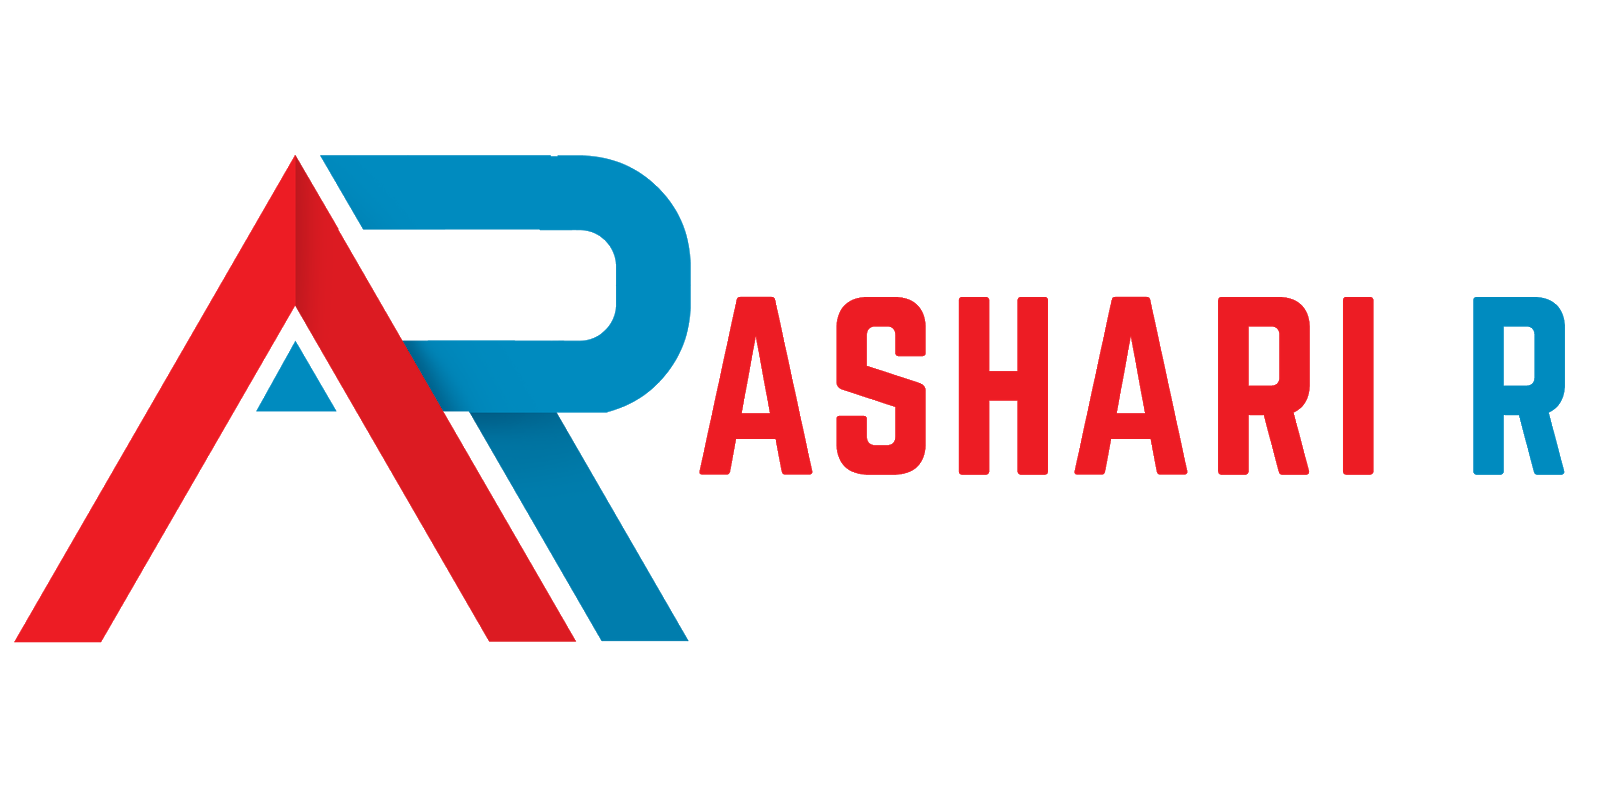 Ashari R